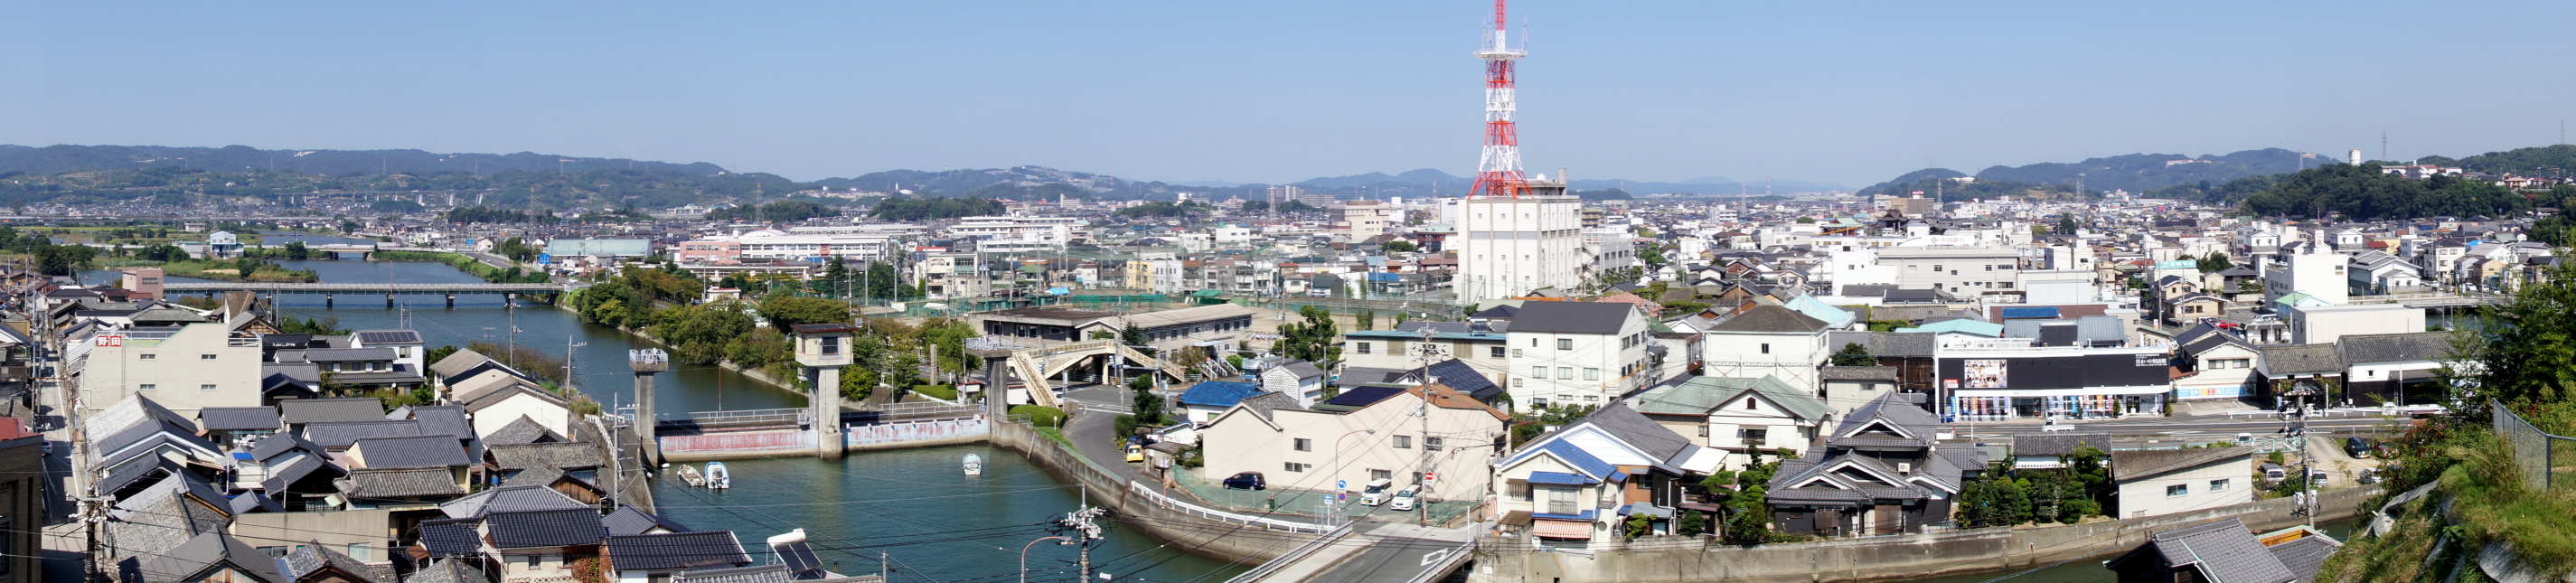 tamashima-district-panorama